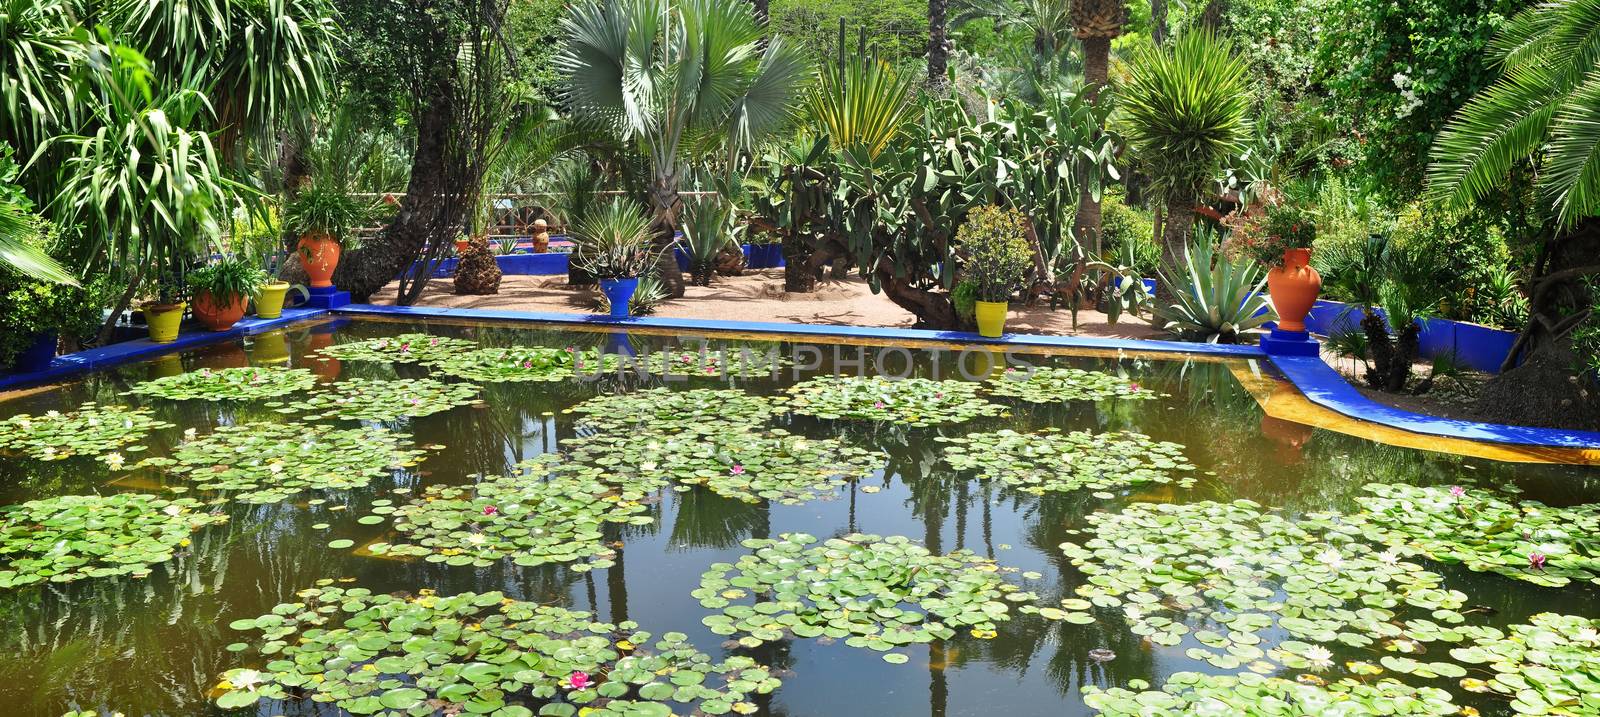 marrakech city morocco Majorelle Garden pond with lily